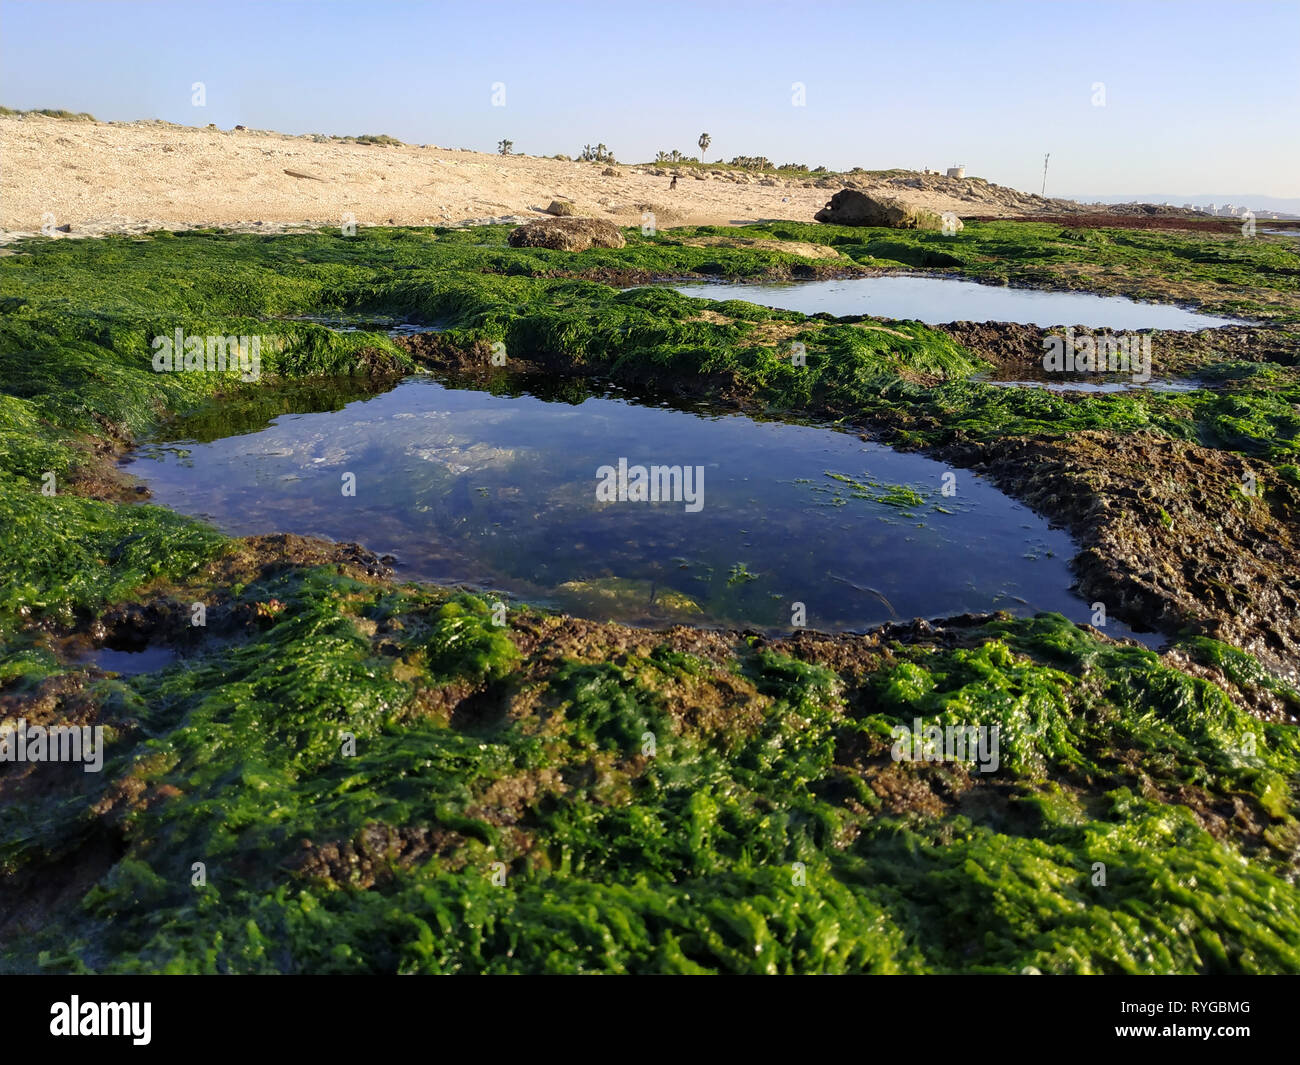 Bustan HaGalil spiaggia sabbiosa con rocce vicino a acri di Haifa in Israele. Akko riva del mare Mediterraneo. L'acqua chiara pietre ricoperto con alghe marine. Blu cielo soleggiato Foto Stock